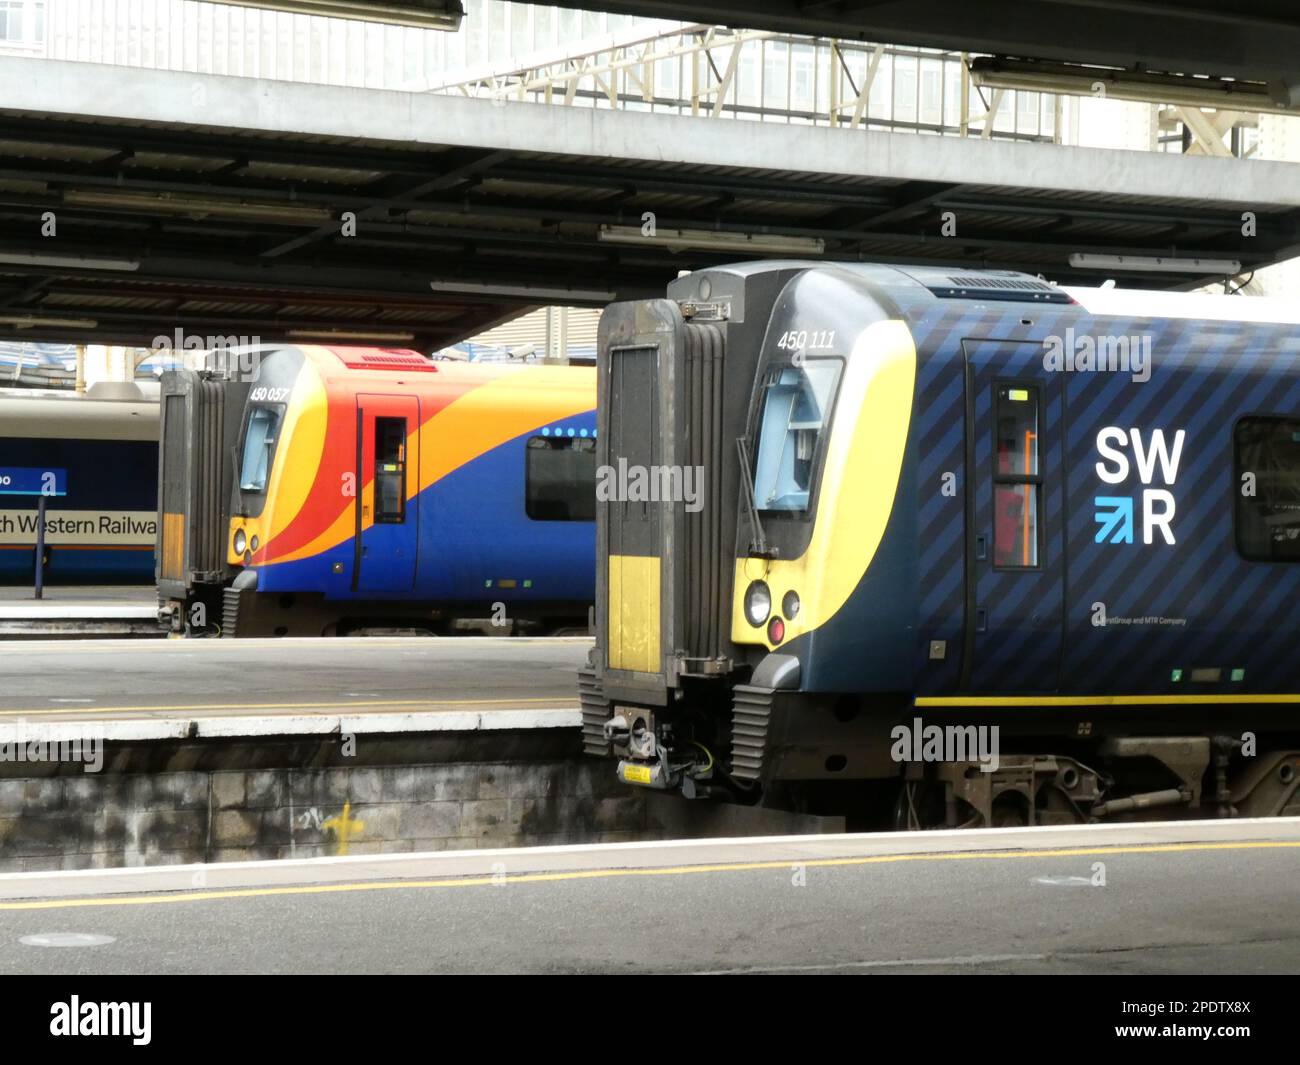 Gare de Waterloo à Londres avec trois trains électriques dans des liveries colorées contrastées Banque D'Images